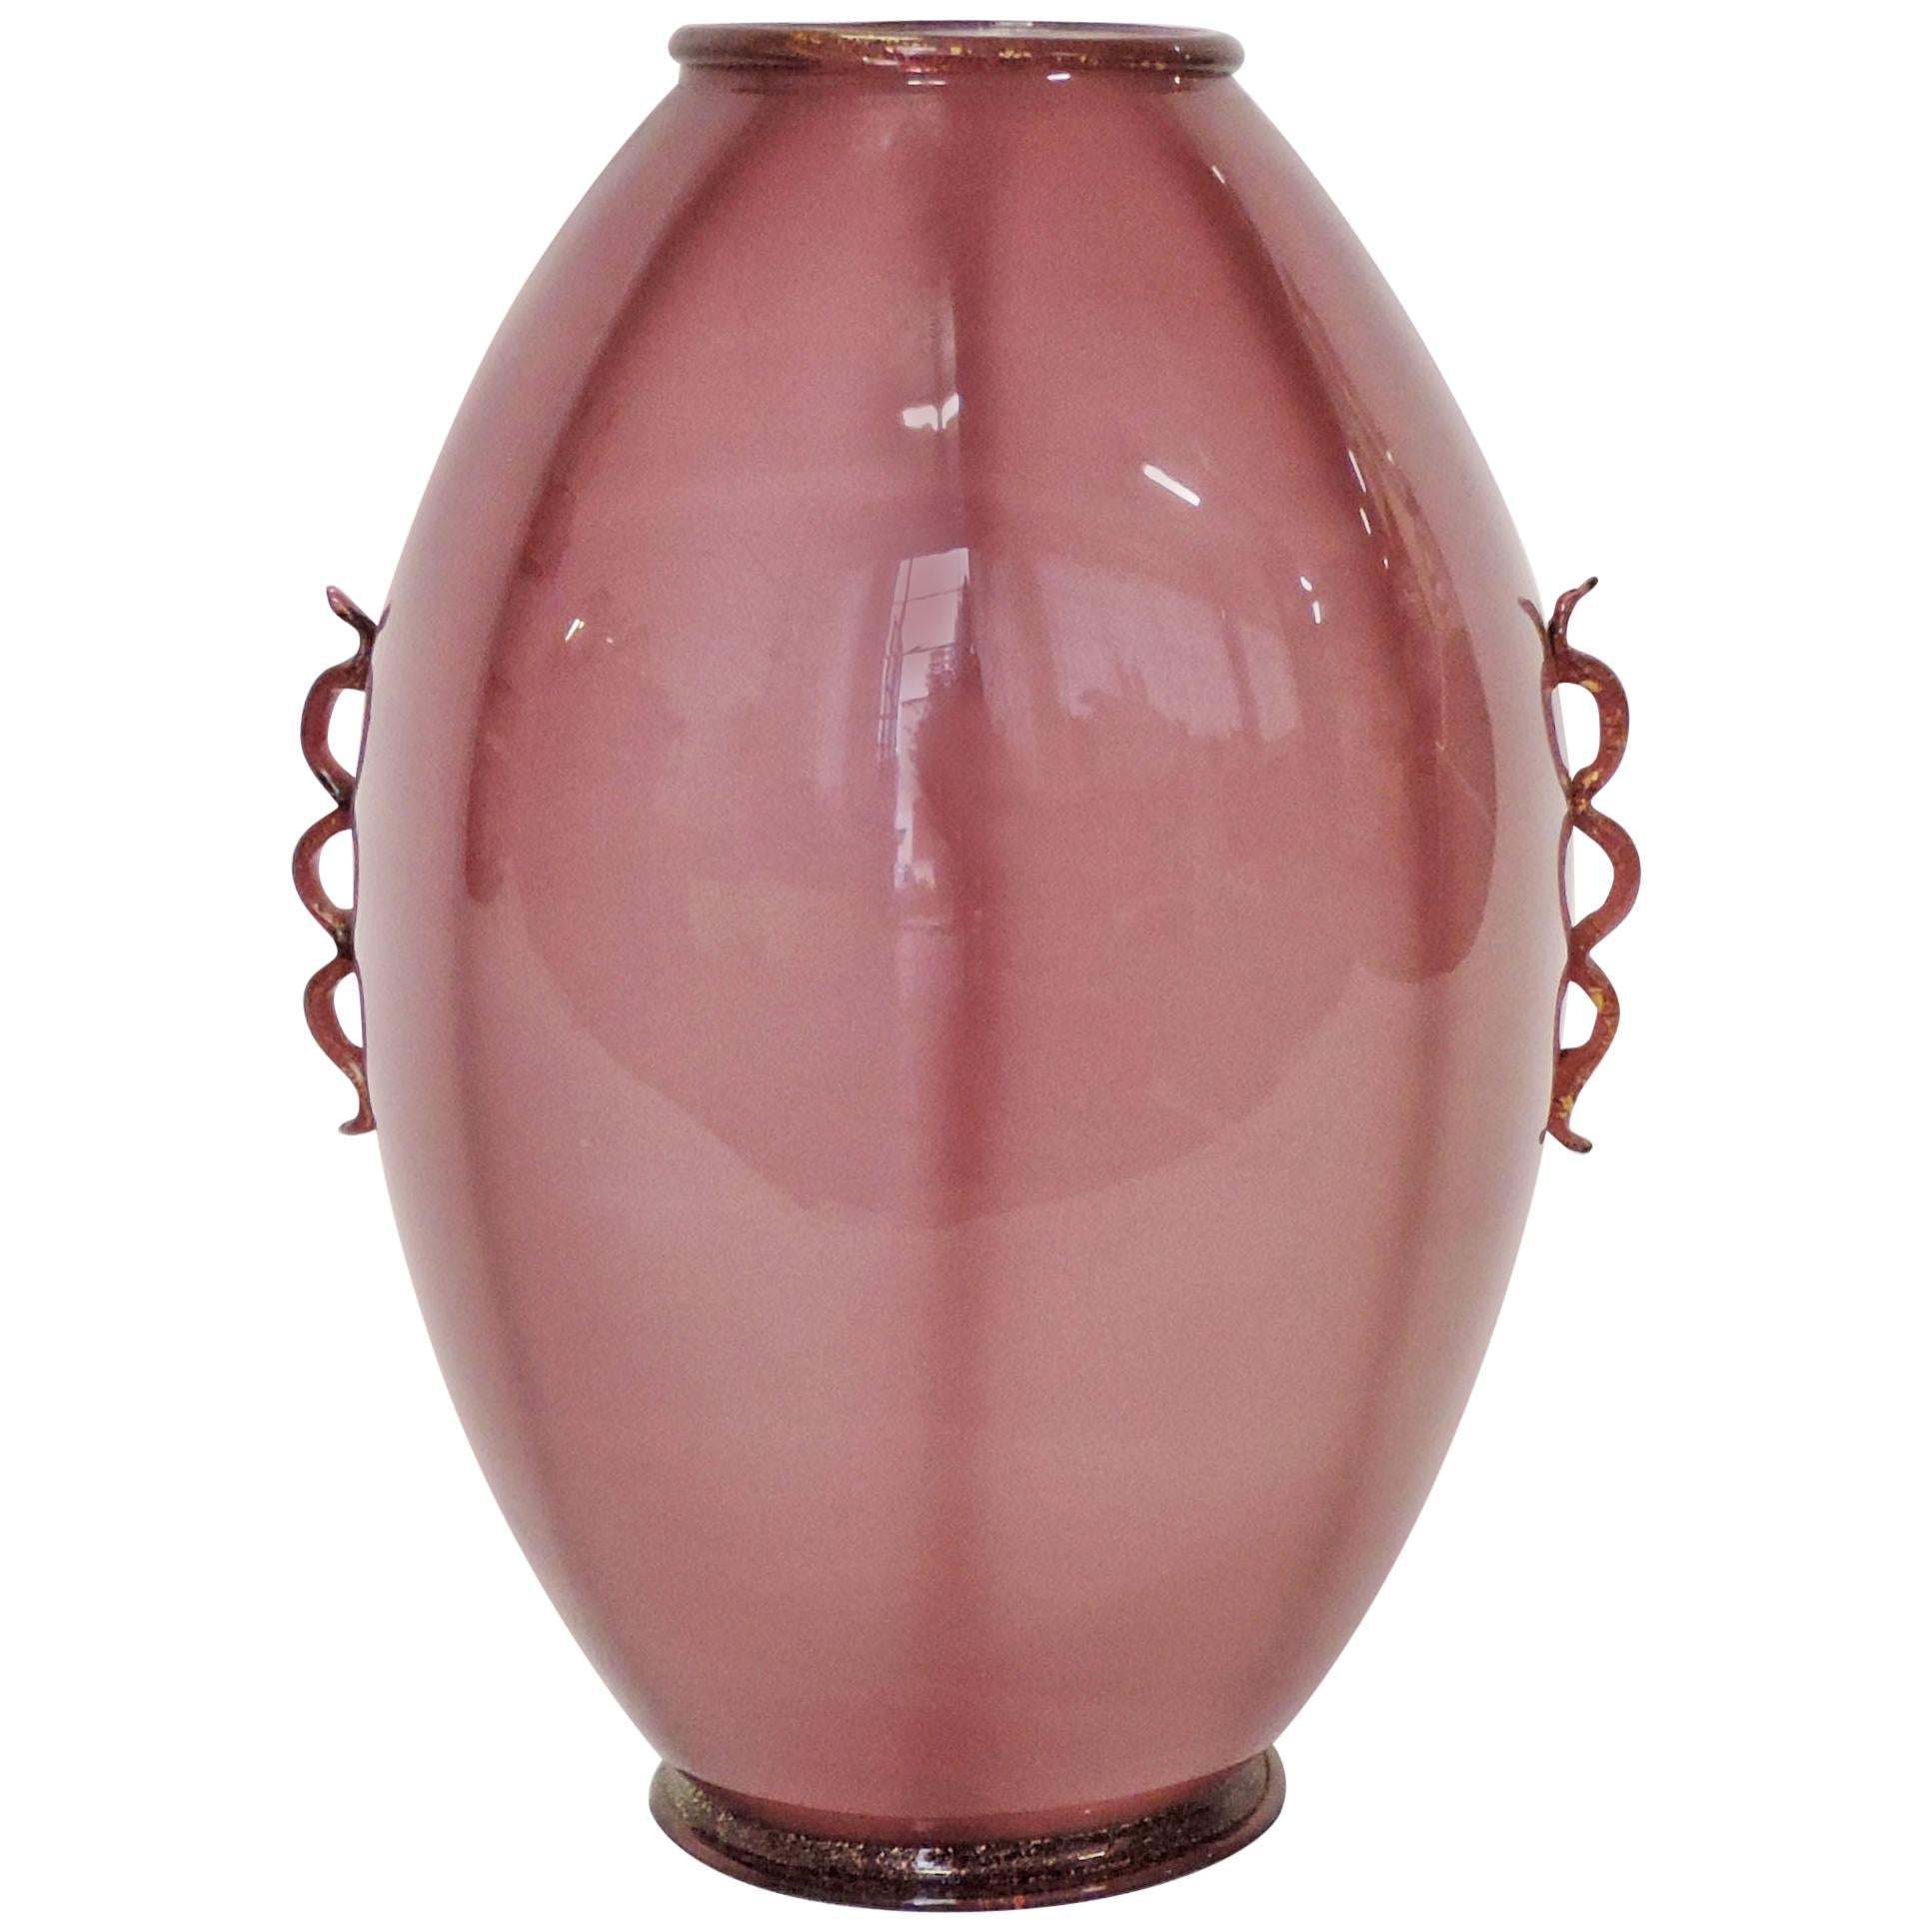 Italian 1930s Murano Glass Vase Attributed to Vittorio Zecchin